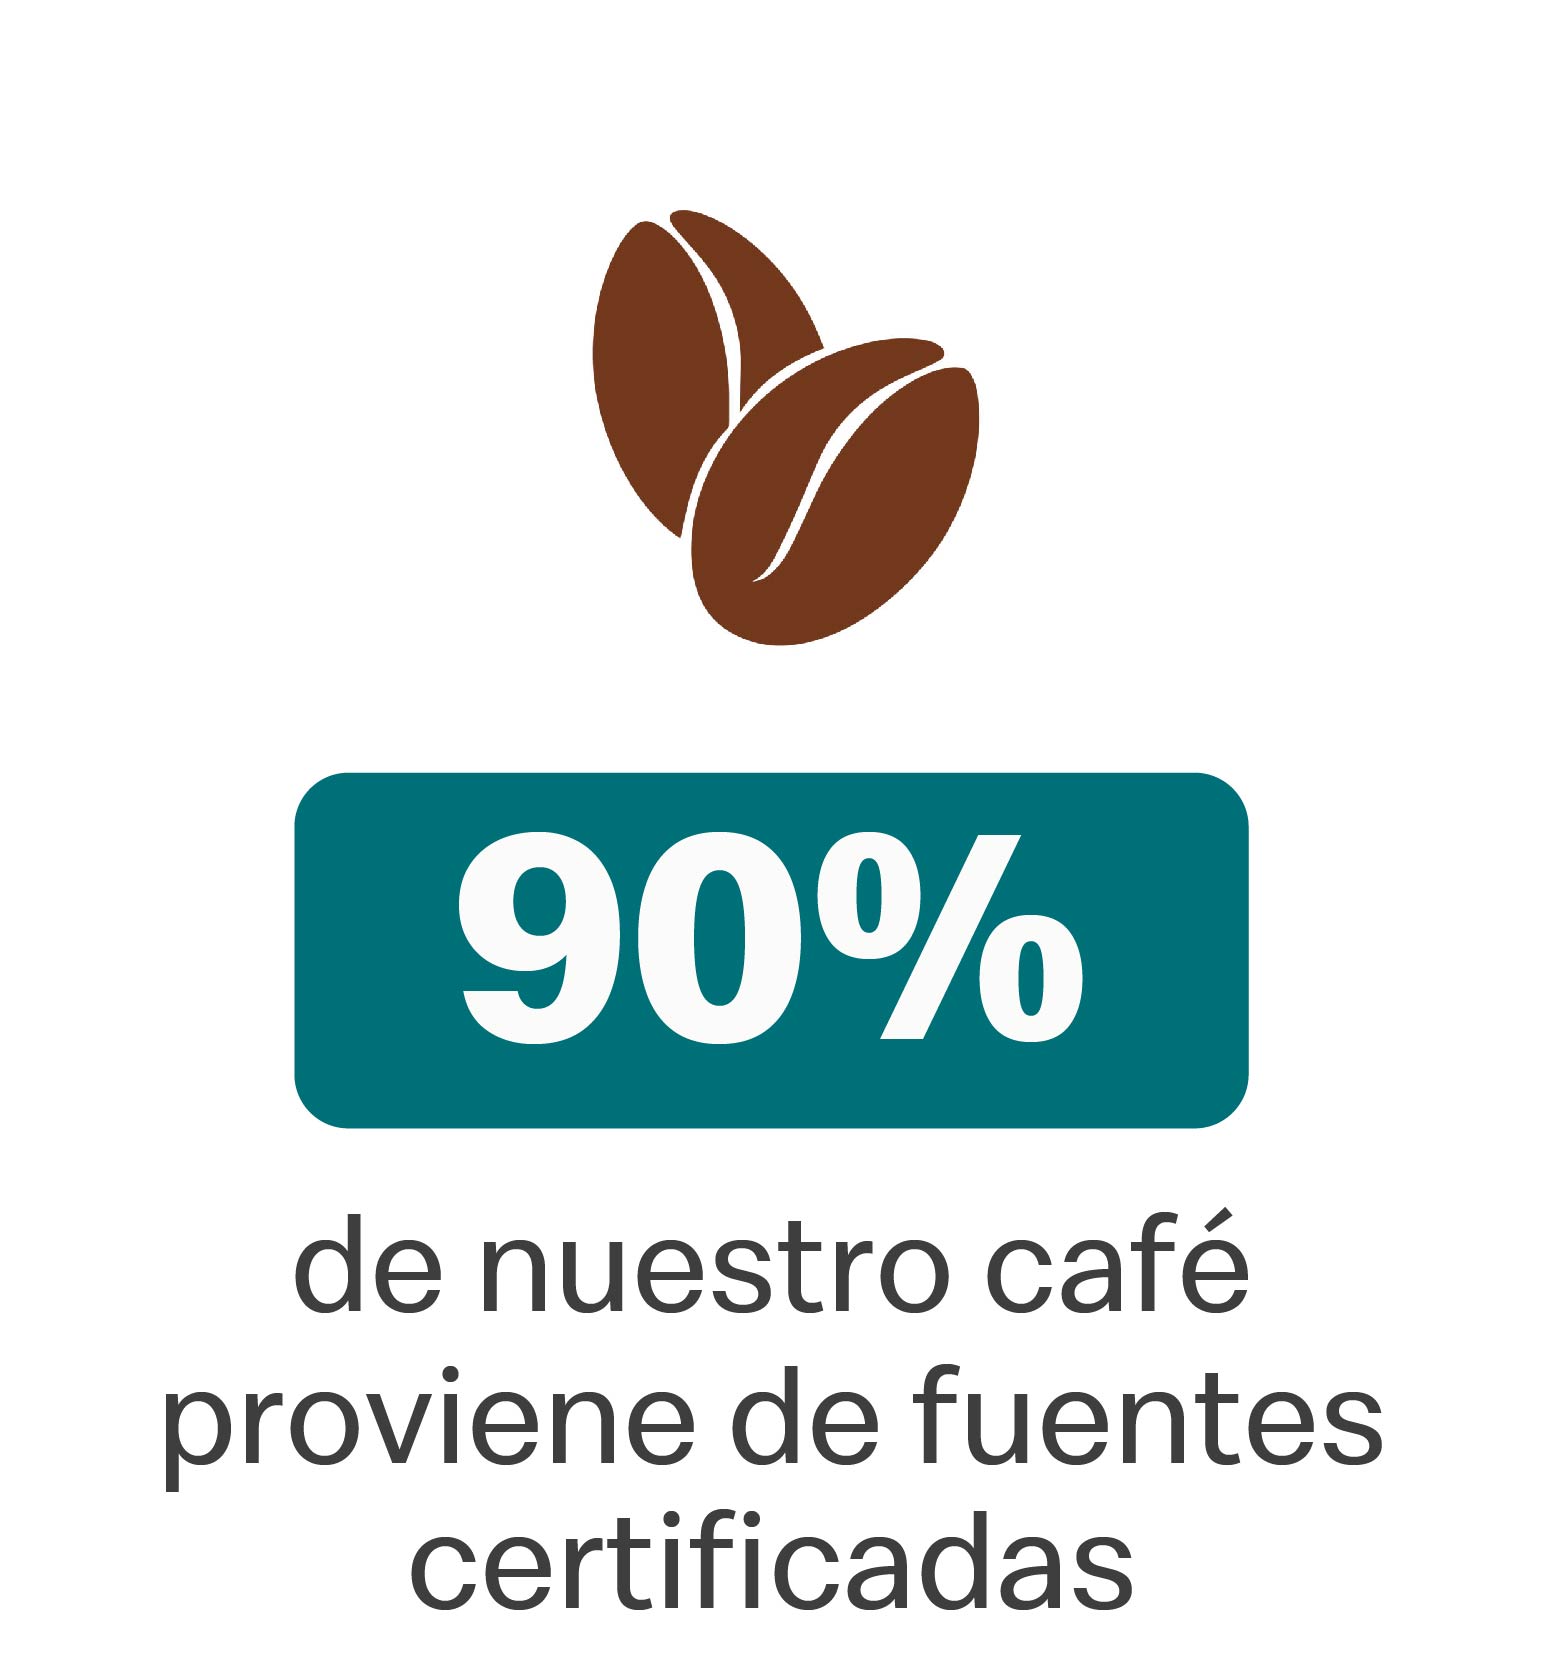 90% de nuestro café proviene de fuentes certificadas